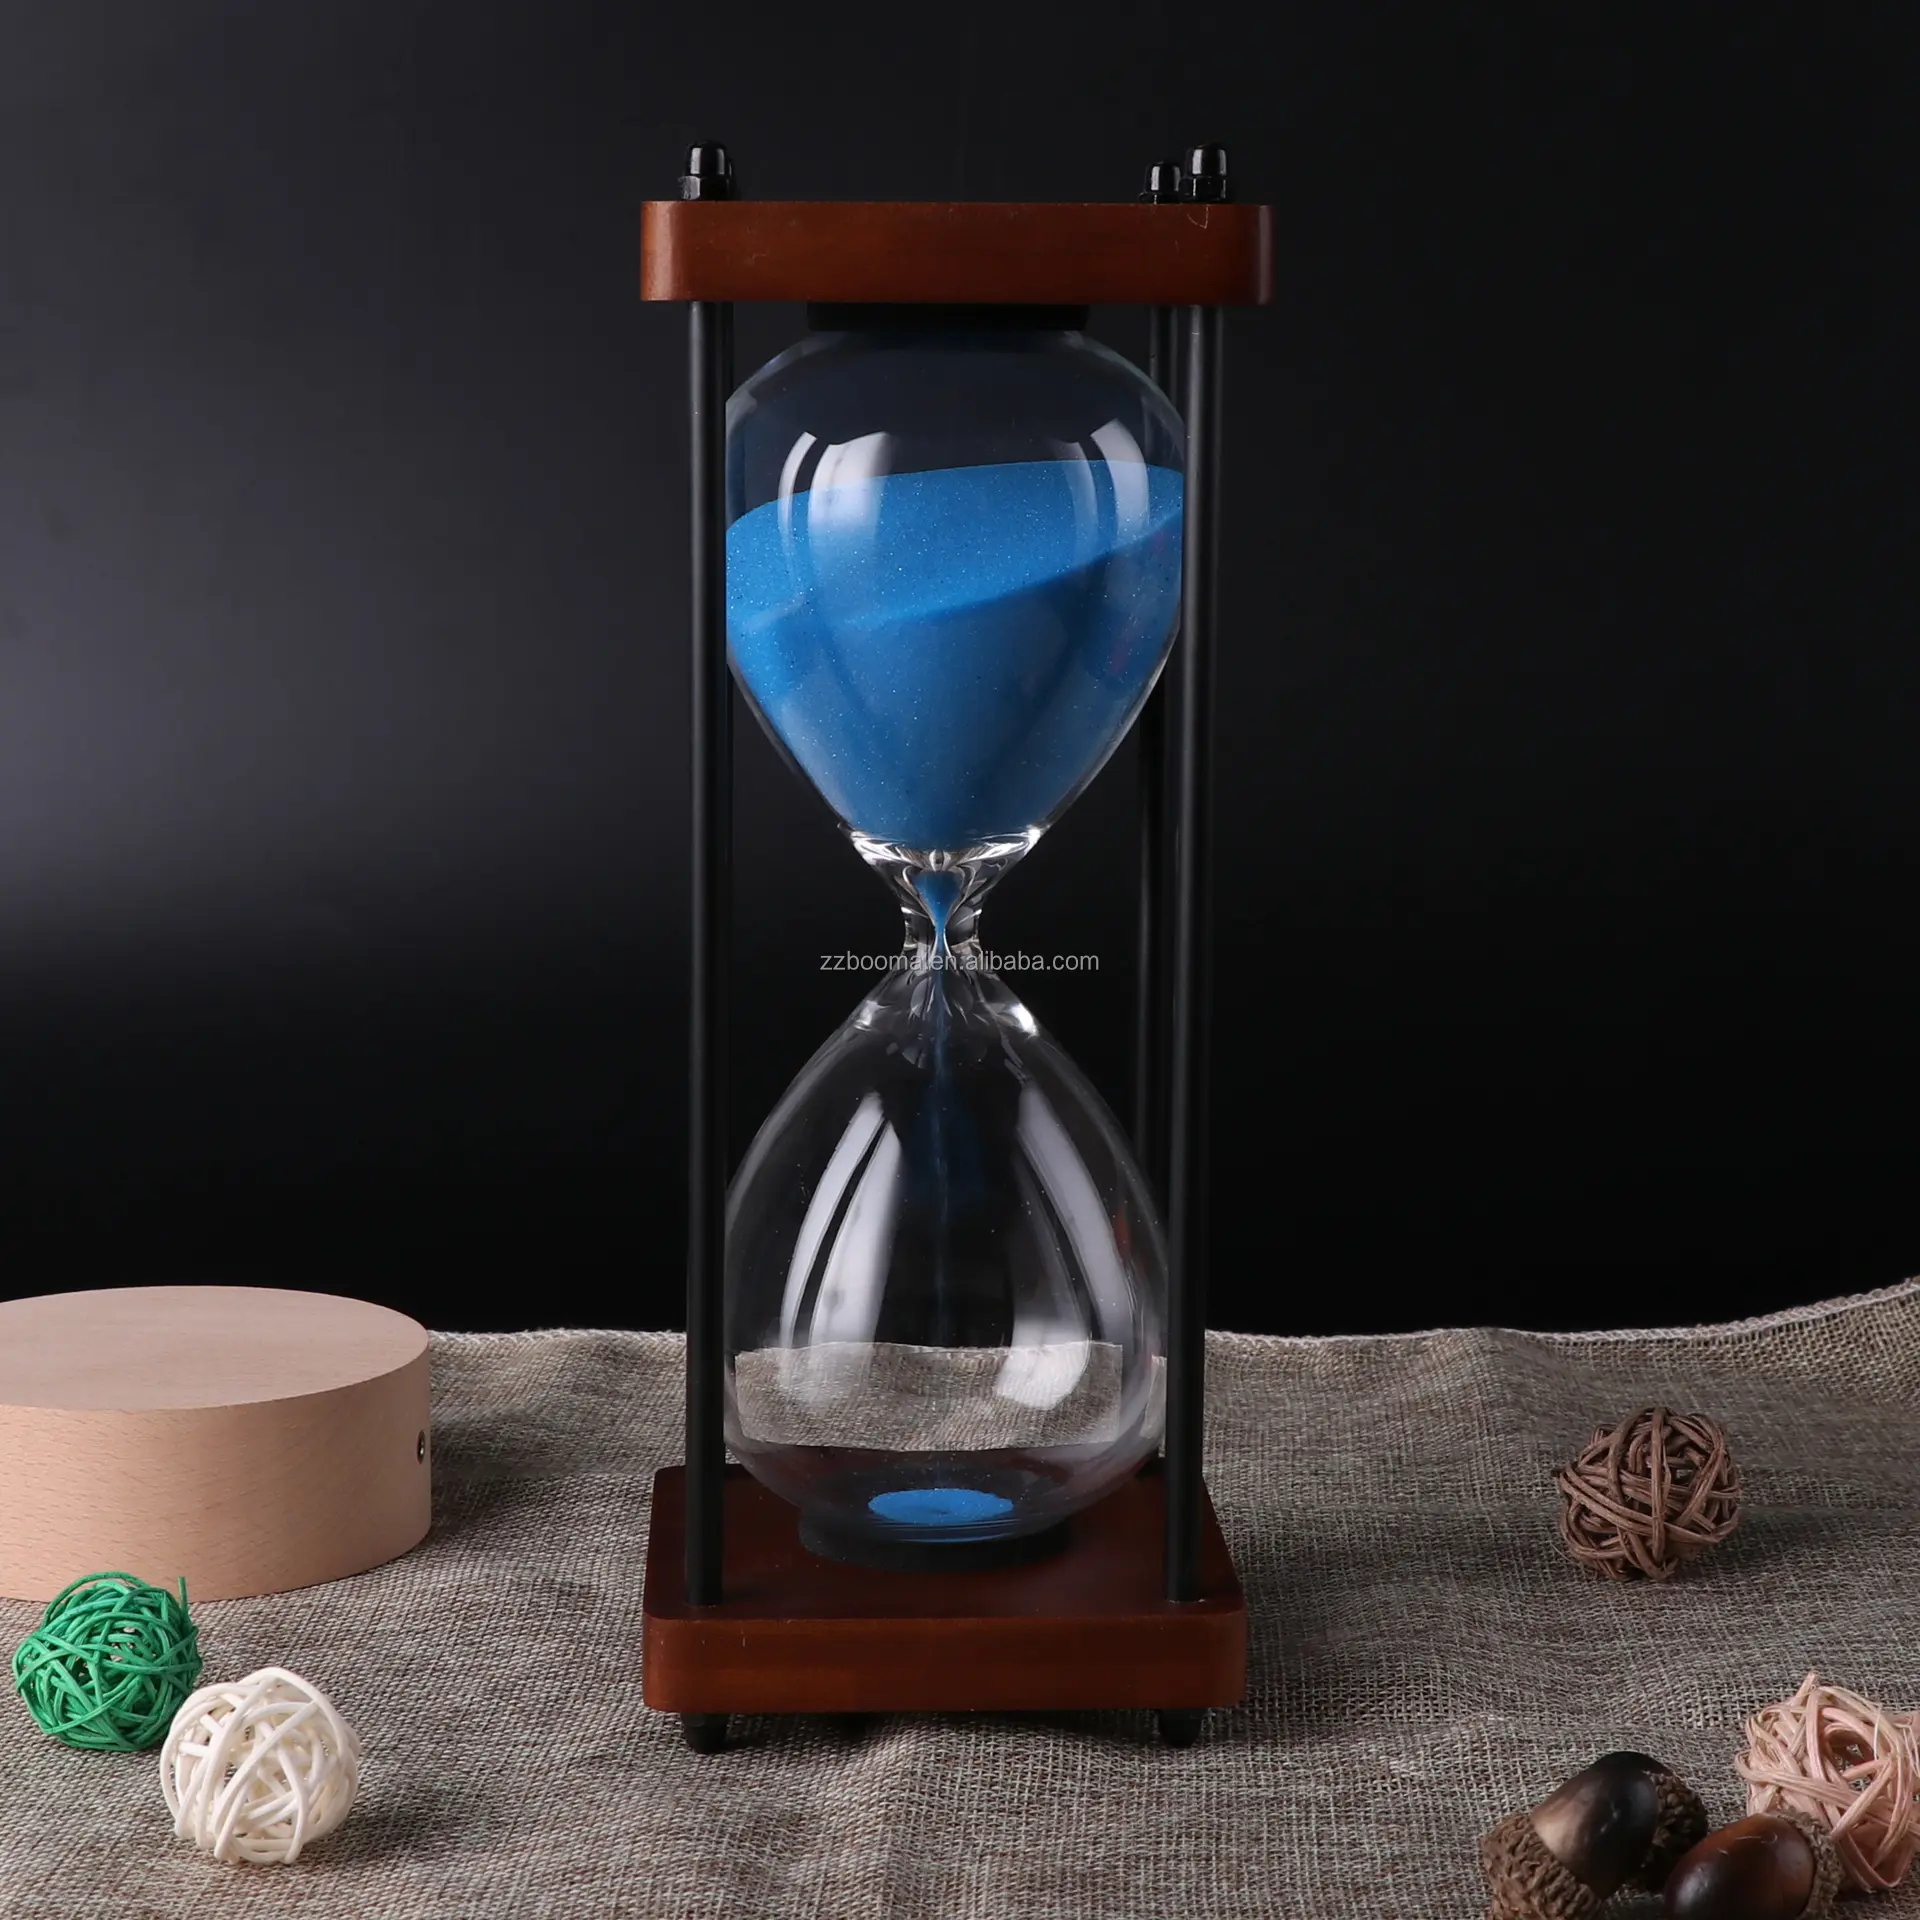 모래 타이머 나무 모래 시계 클래식 타이머 다채로운 모래 시계 모래 시계 타이머 장난감 30 분